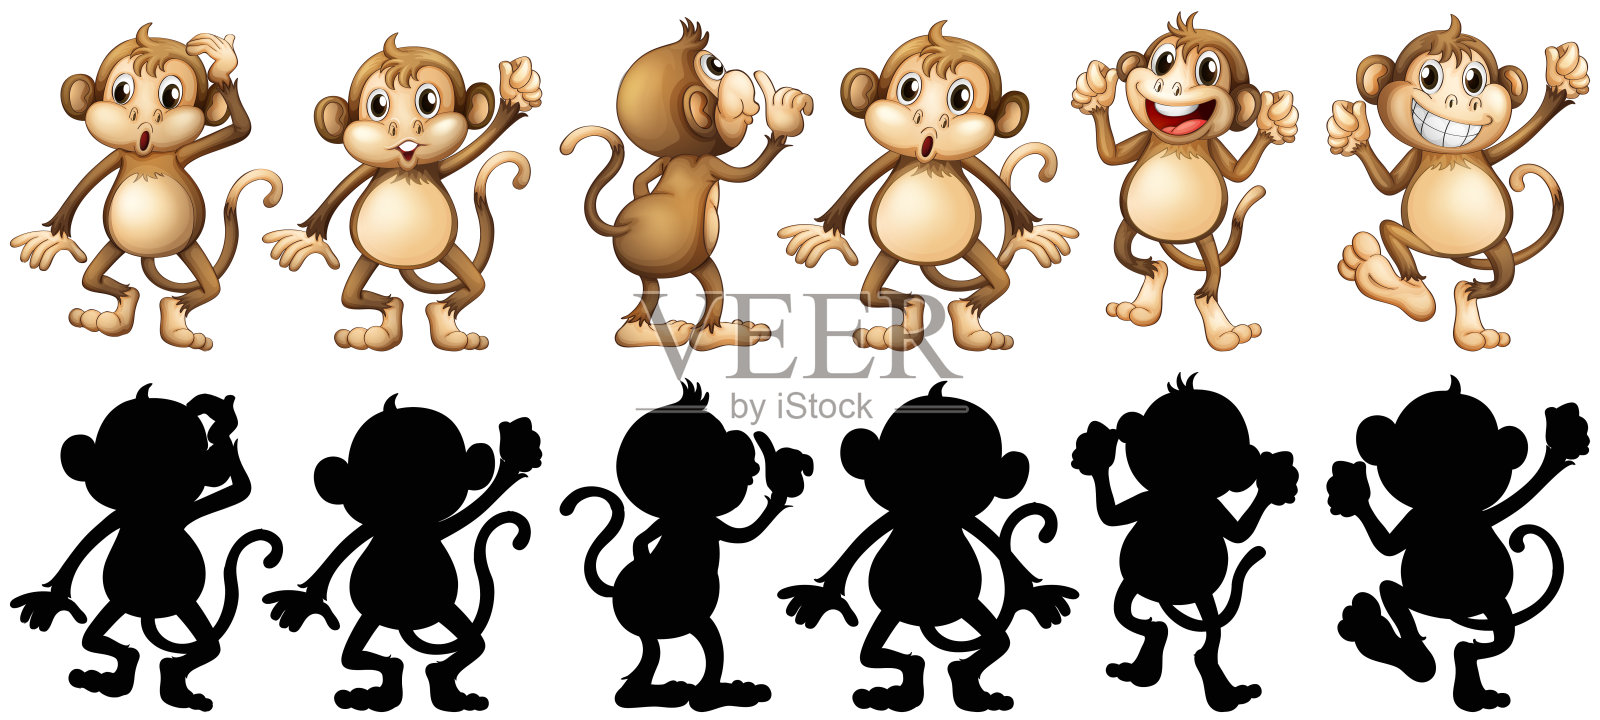 猴子和它的剪影在不同的帖子设计元素图片